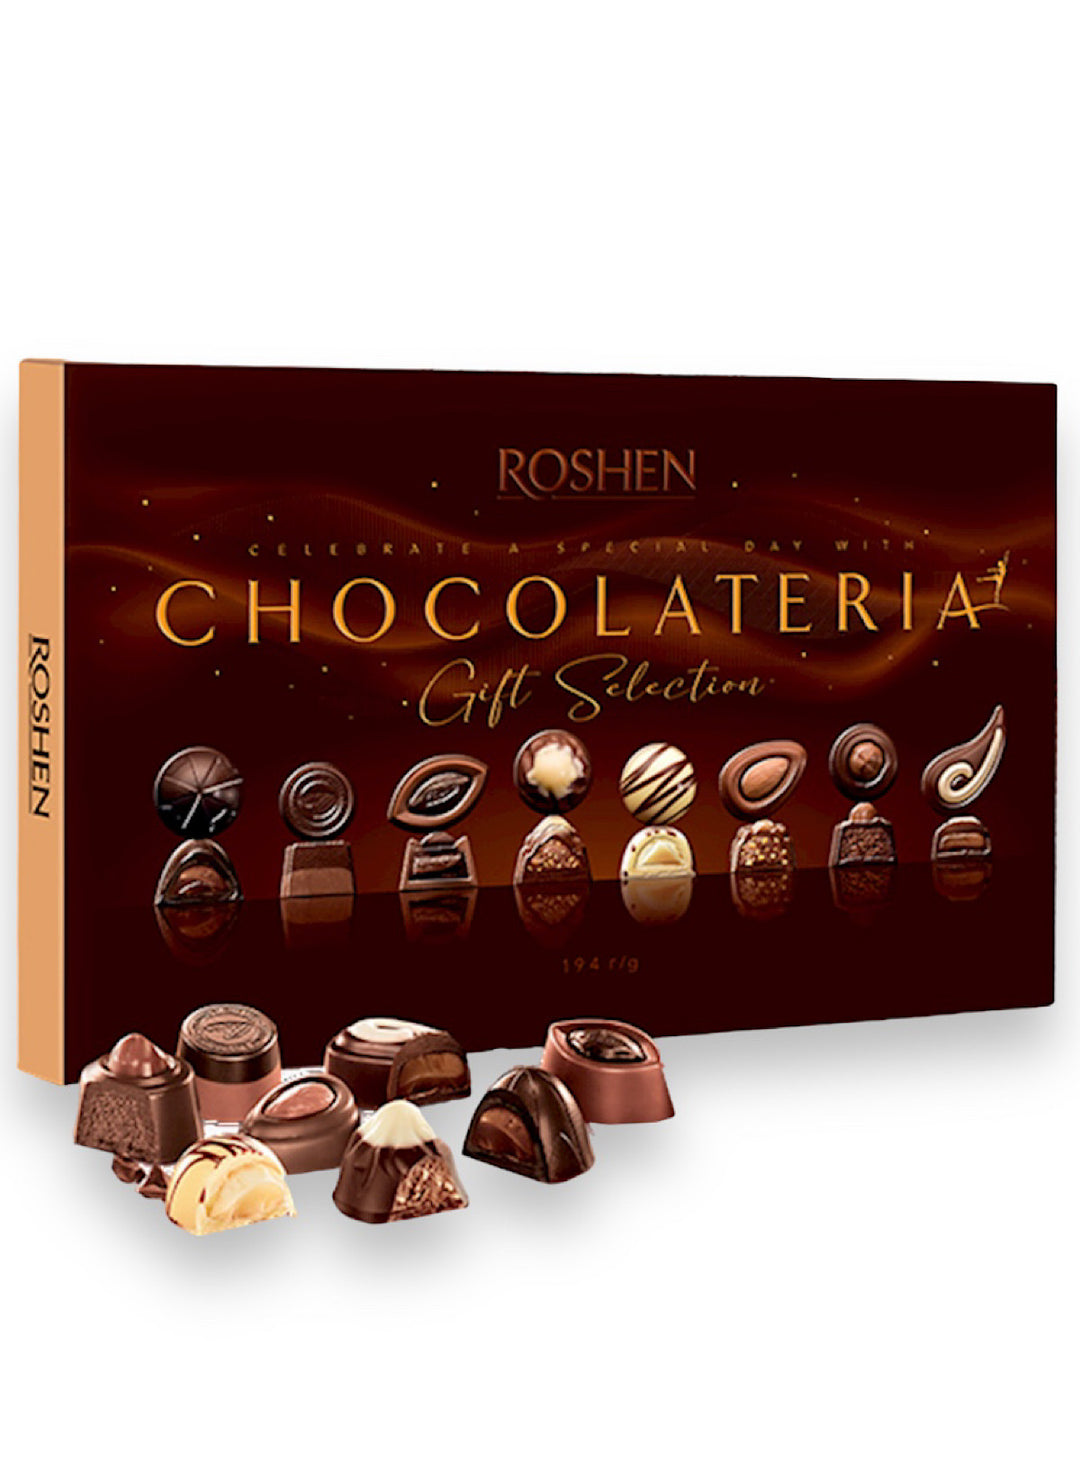 Chocolate Assortment Truffles - Roshen - 194g